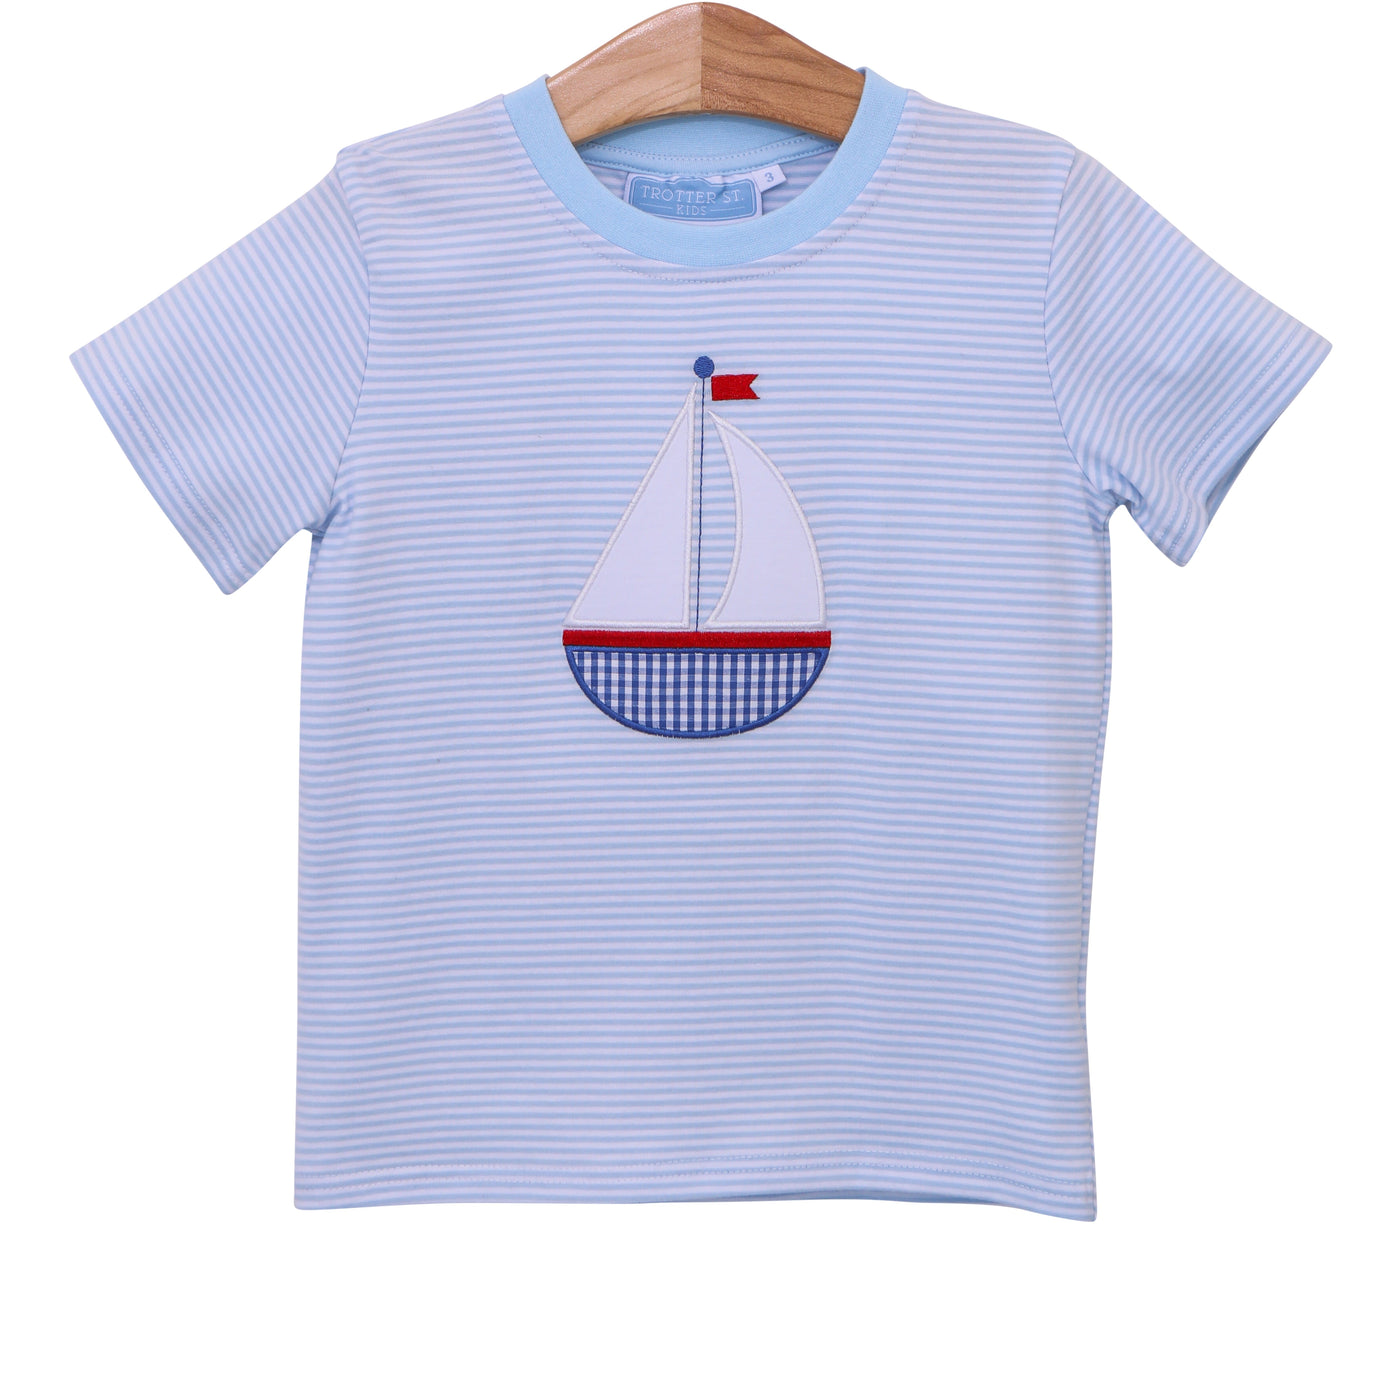 Sailboat Stripe Shirt